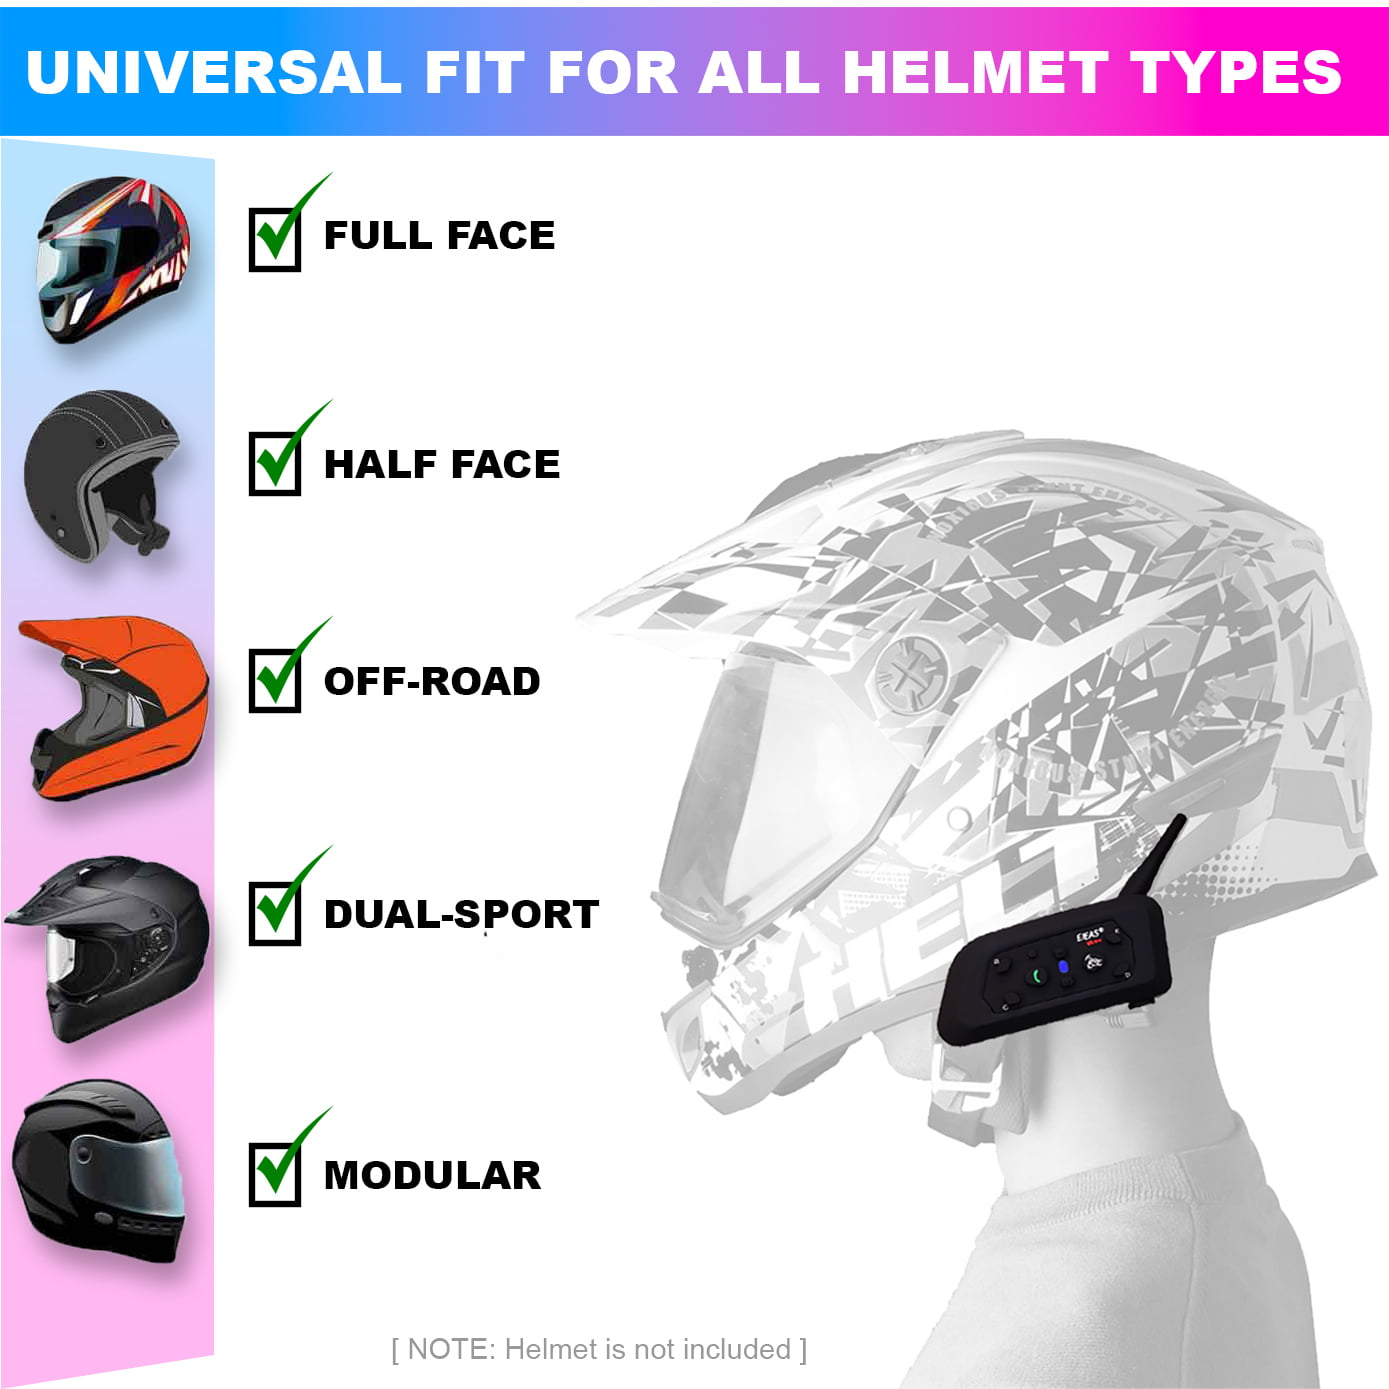 Helmet Intercom V6 Pro